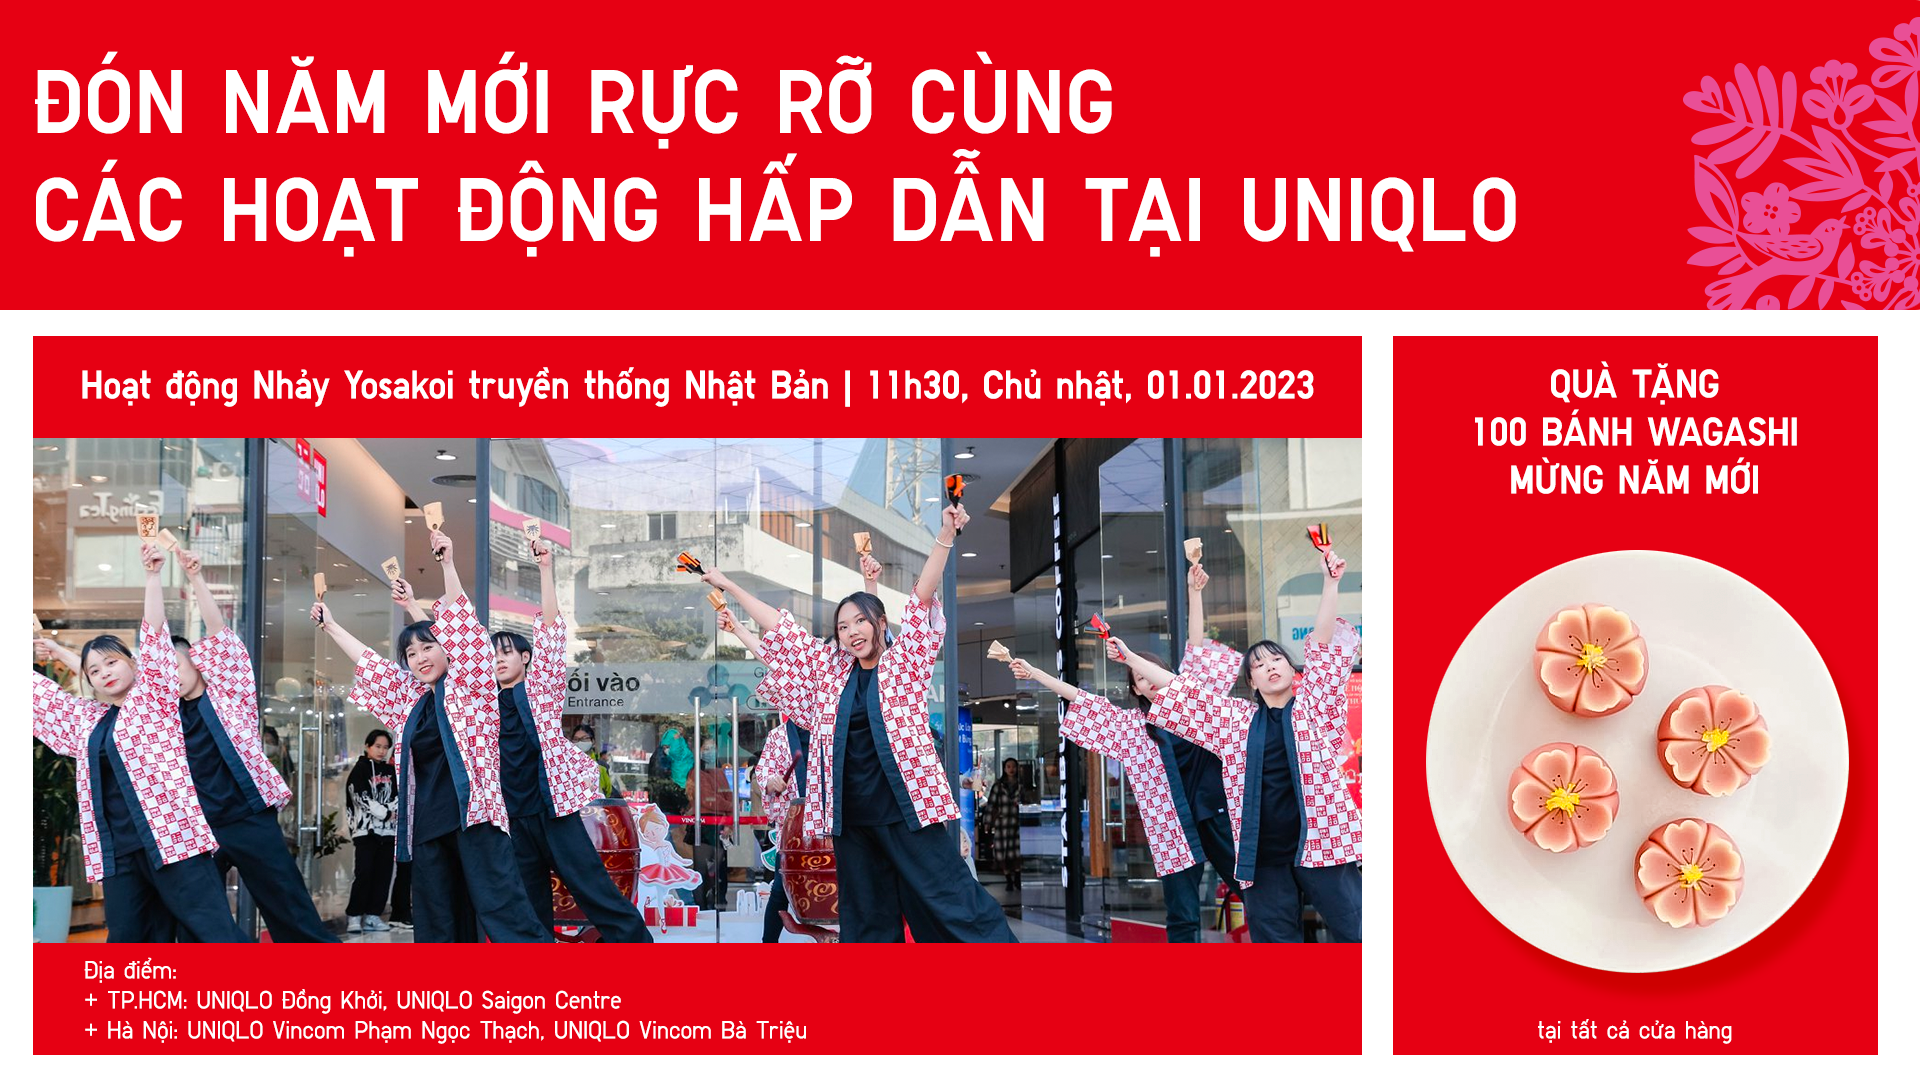 Cửa hàng UNIQLO Saigon Centre sẵn sàng cho ngày khai trương